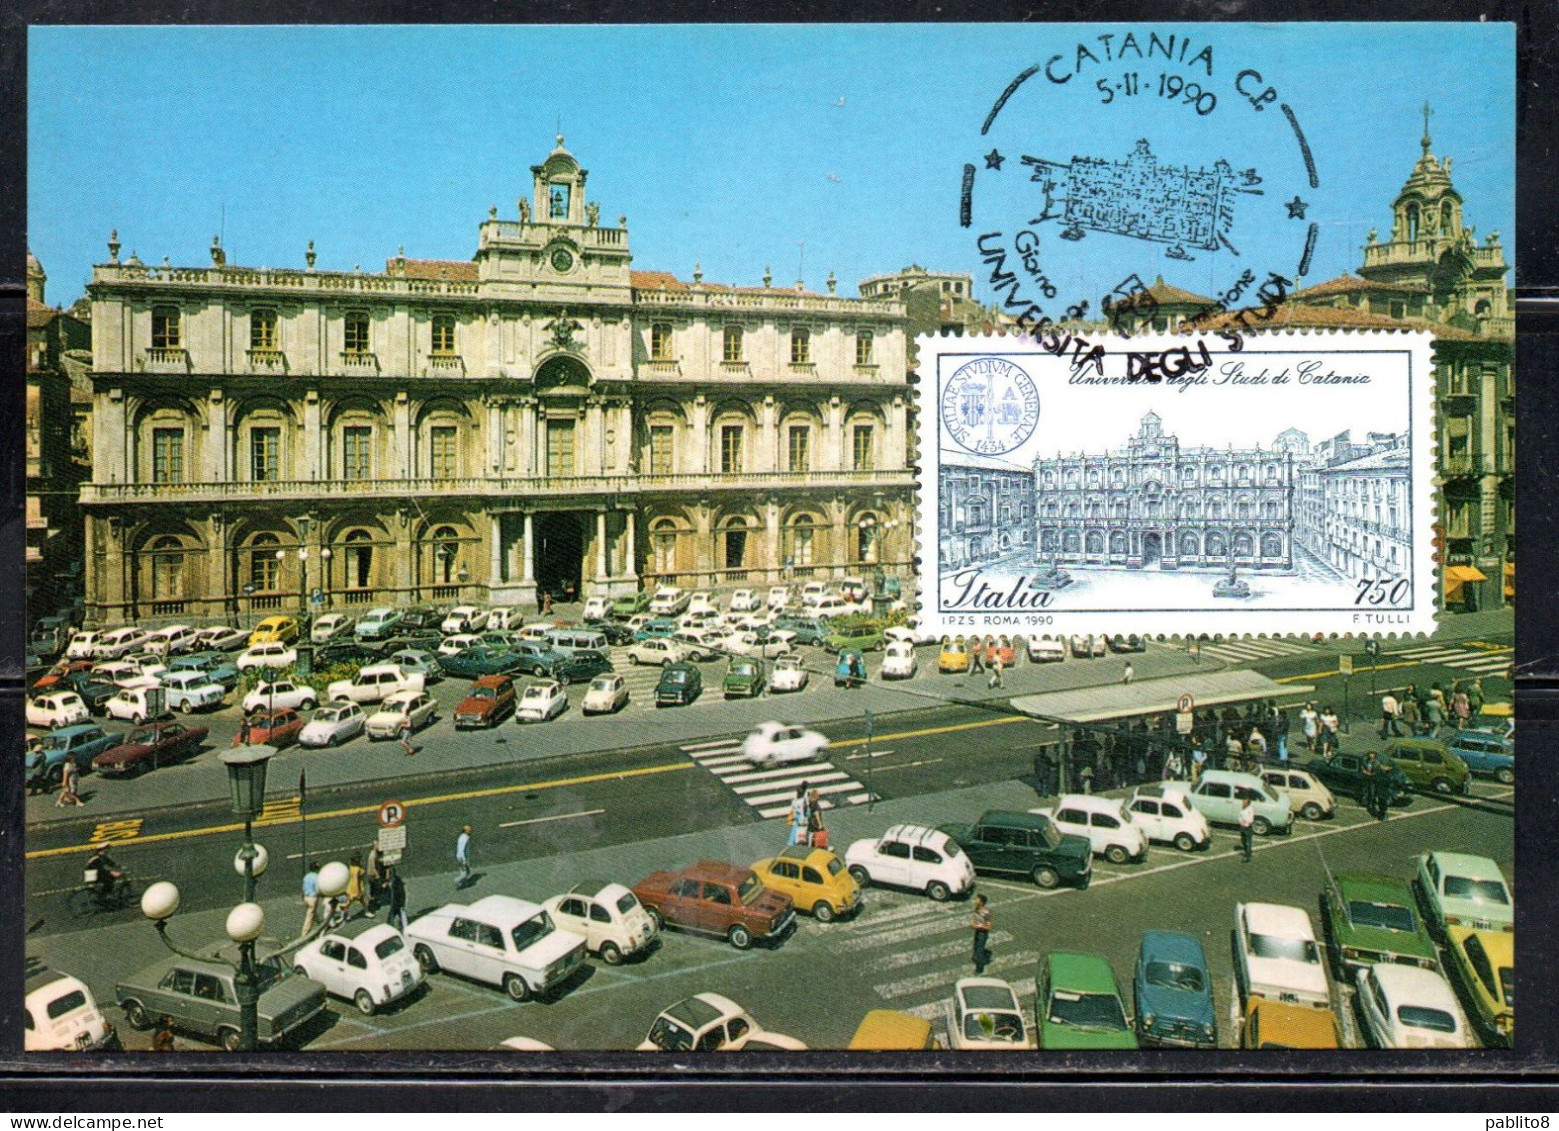 REPUBBLICA ITALY REPUBLIC 1990 SCUOLE D'ITALIA UNIVERSITÀ DEGLI STUDI CATANIA LIRE 750 CARTOLINA MAXI MAXIMUM CARD - Cartes-Maximum (CM)